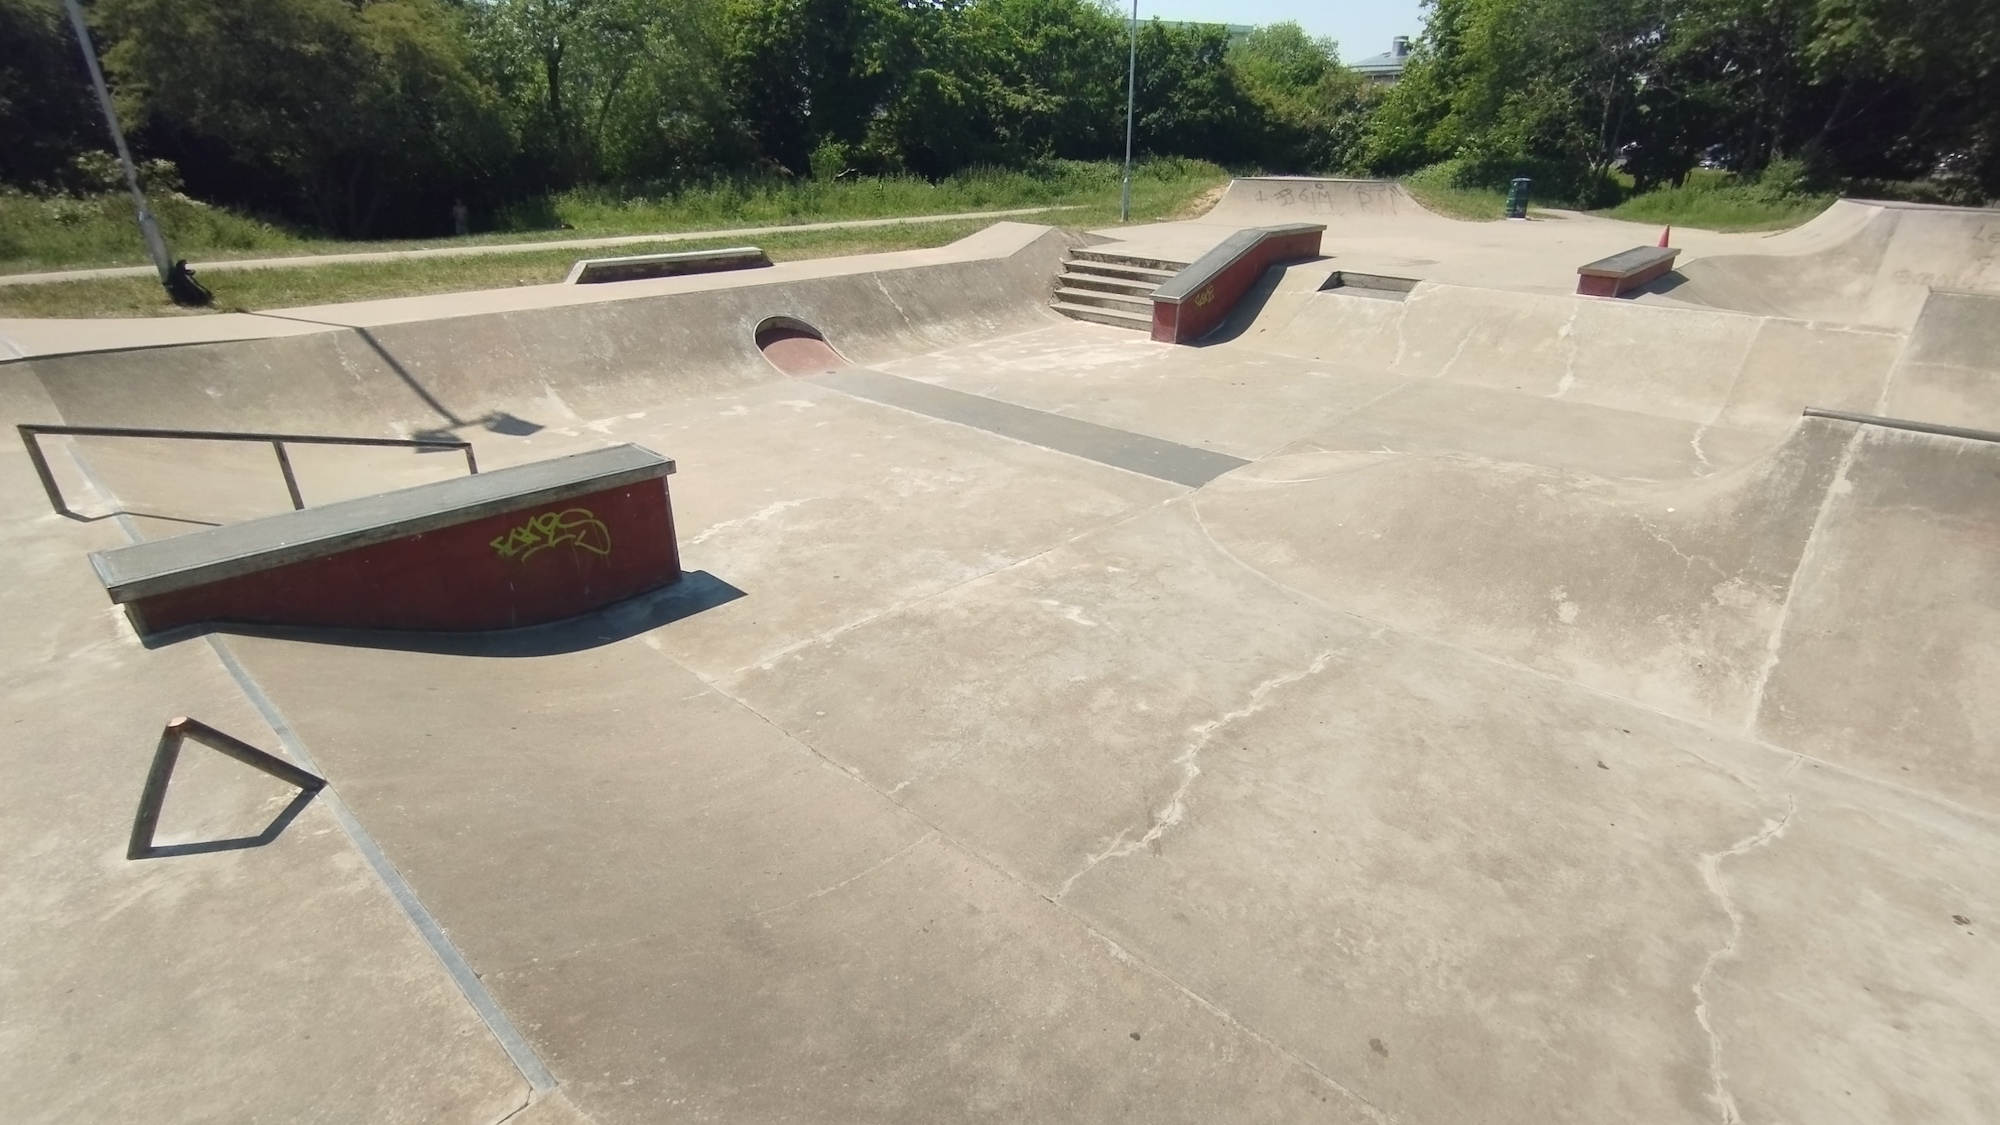 Romford Skatepark